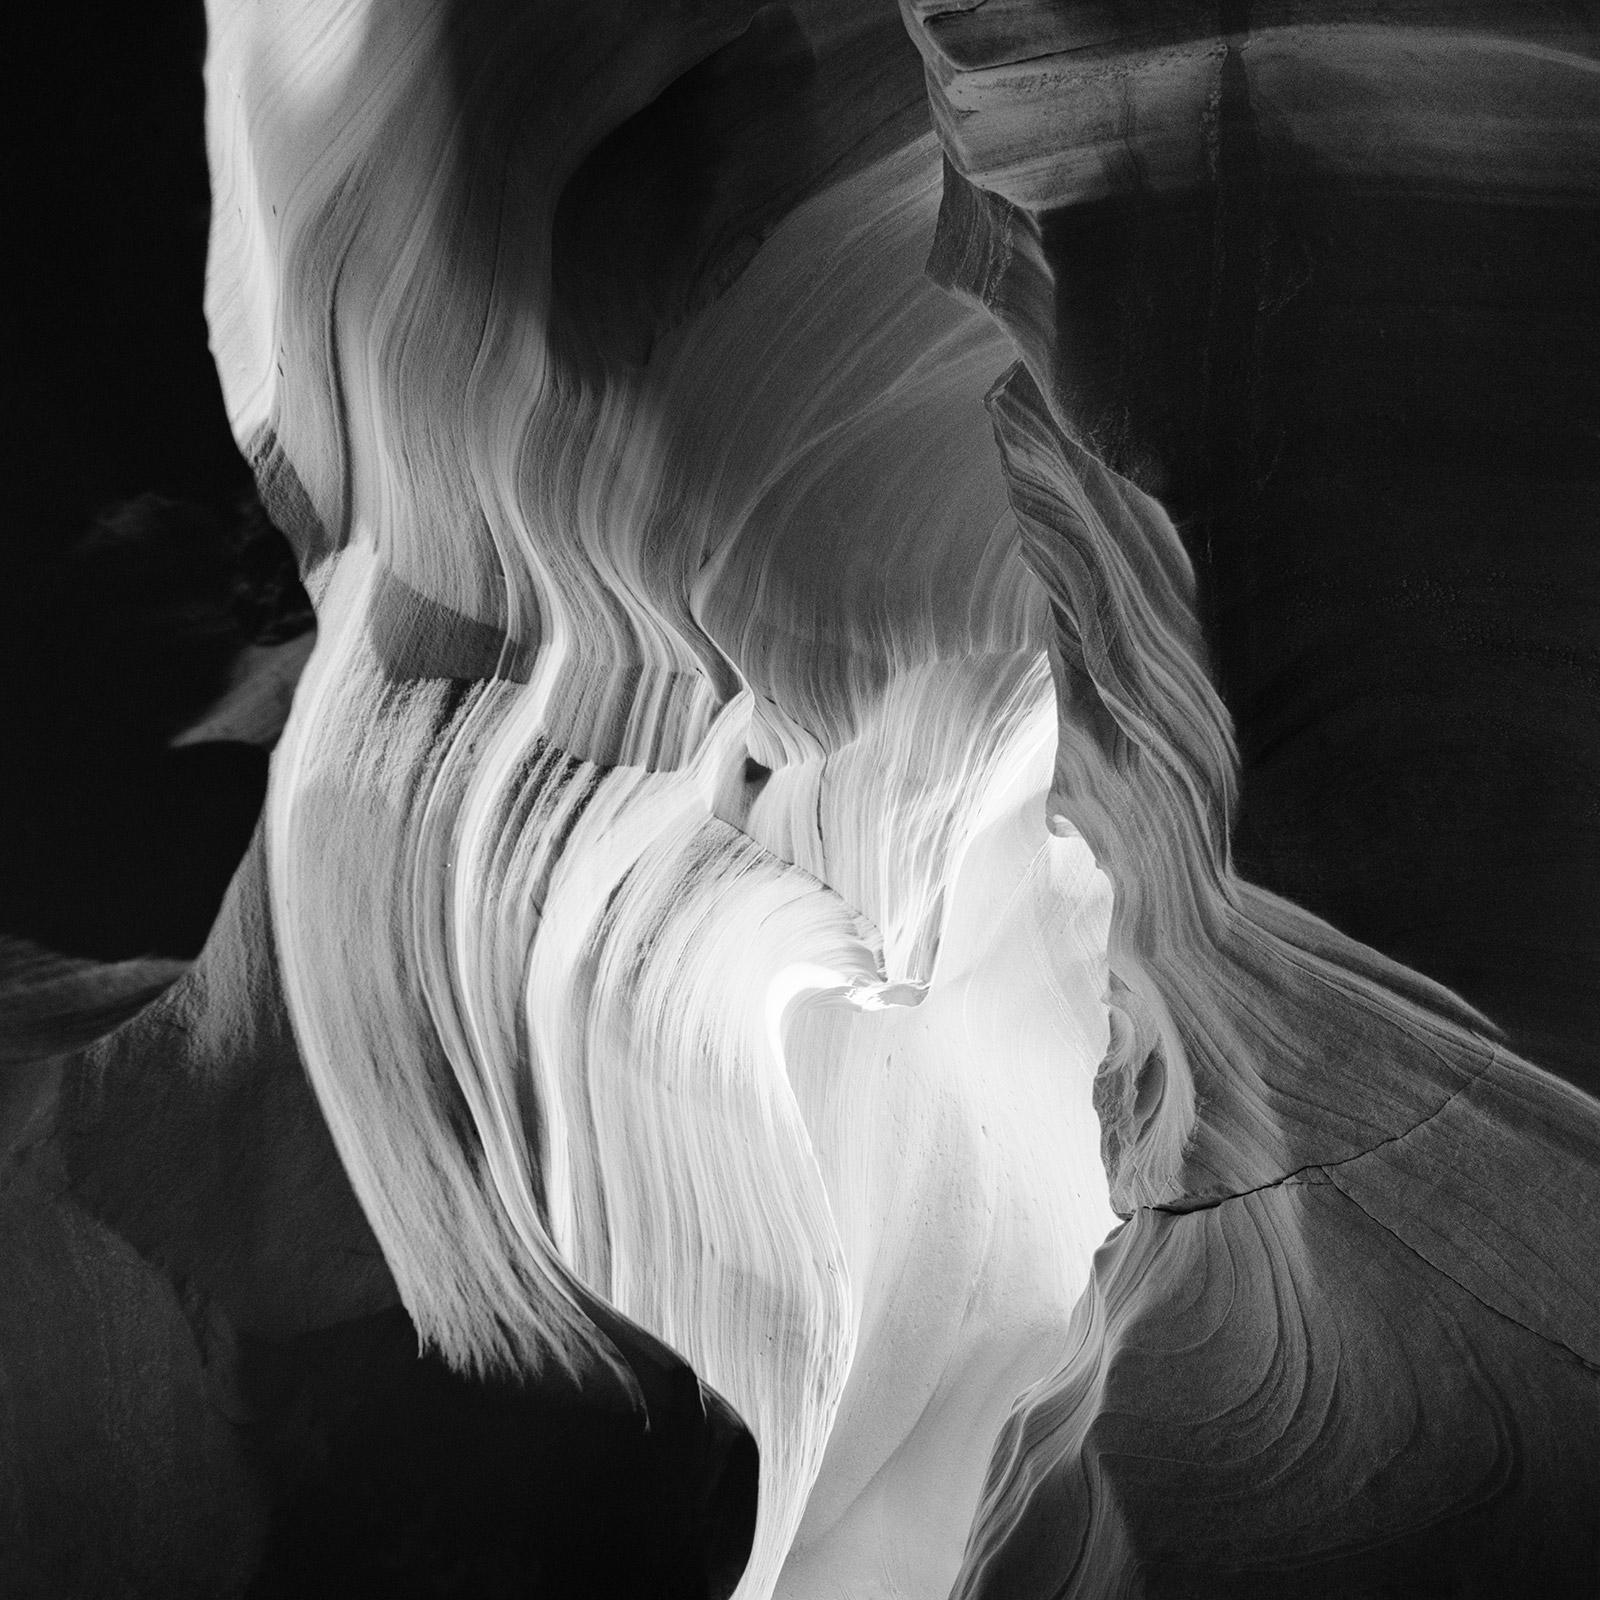 Gerald Berghammer, Ina Forstinger Black and White Photograph - Heart, Antelope Canyon, Desert, USA, black and white photography, landscapes